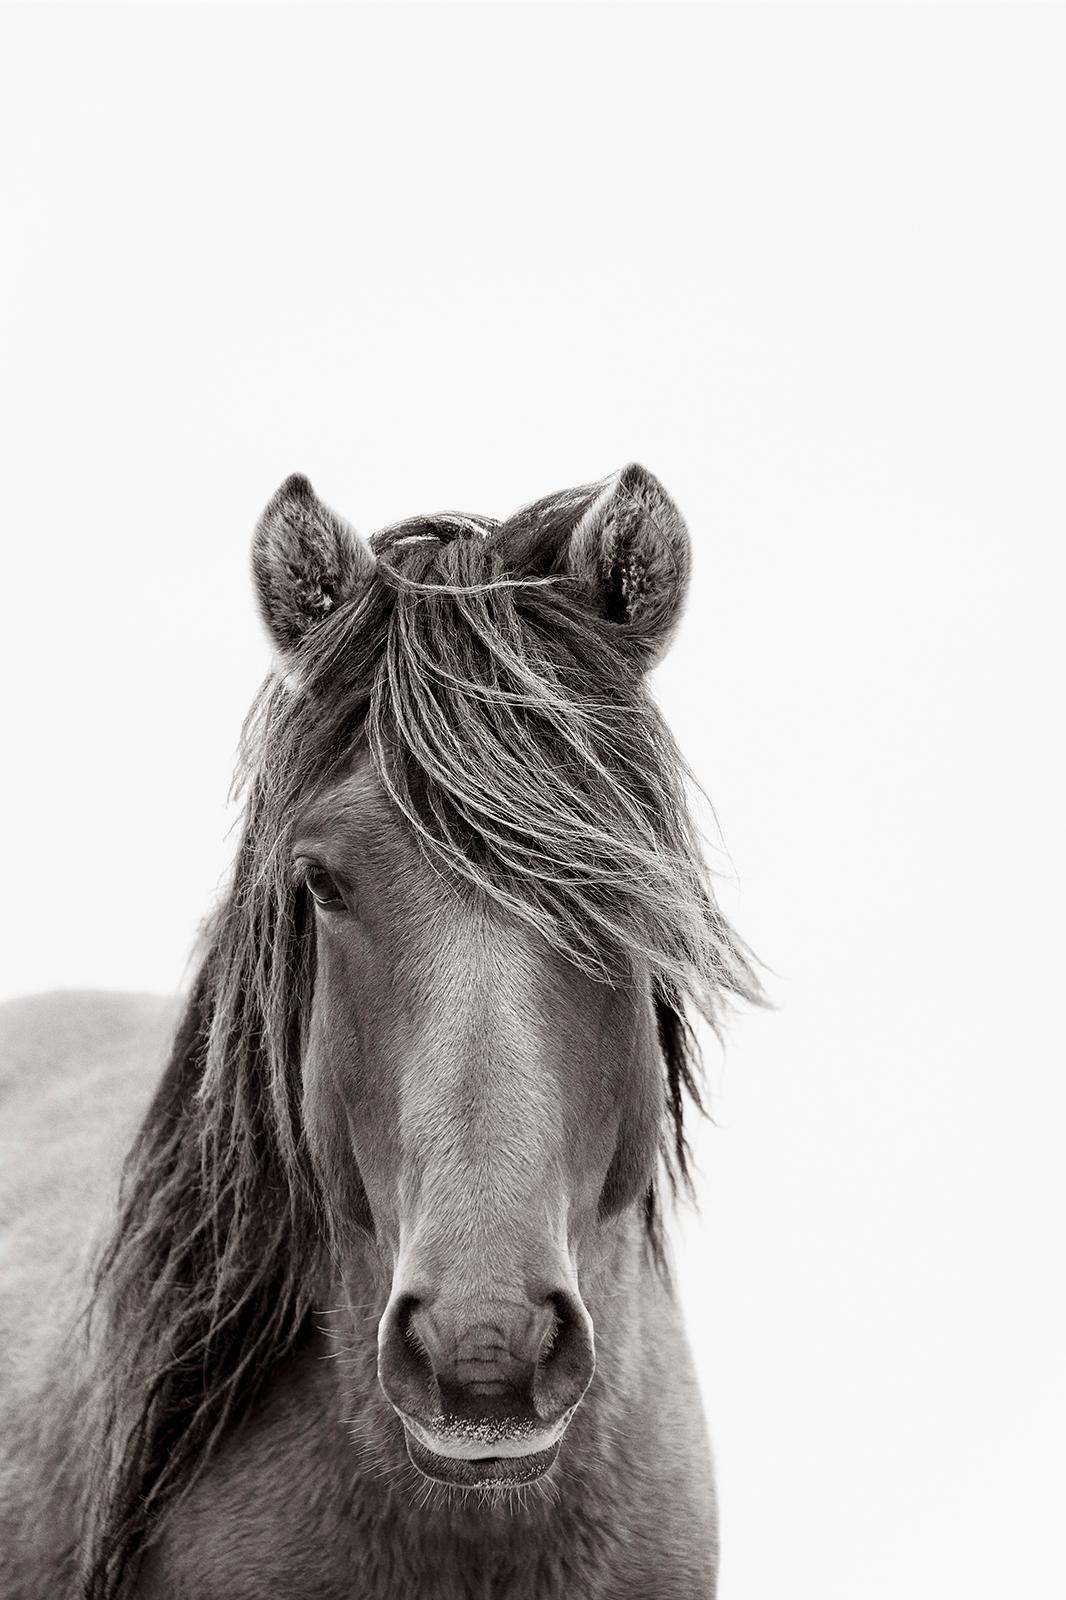 Drew Doggett Black and White Photograph – Ein einzelnes Wildpferd, das die Kamera auf der Zobelinsel betrachtet